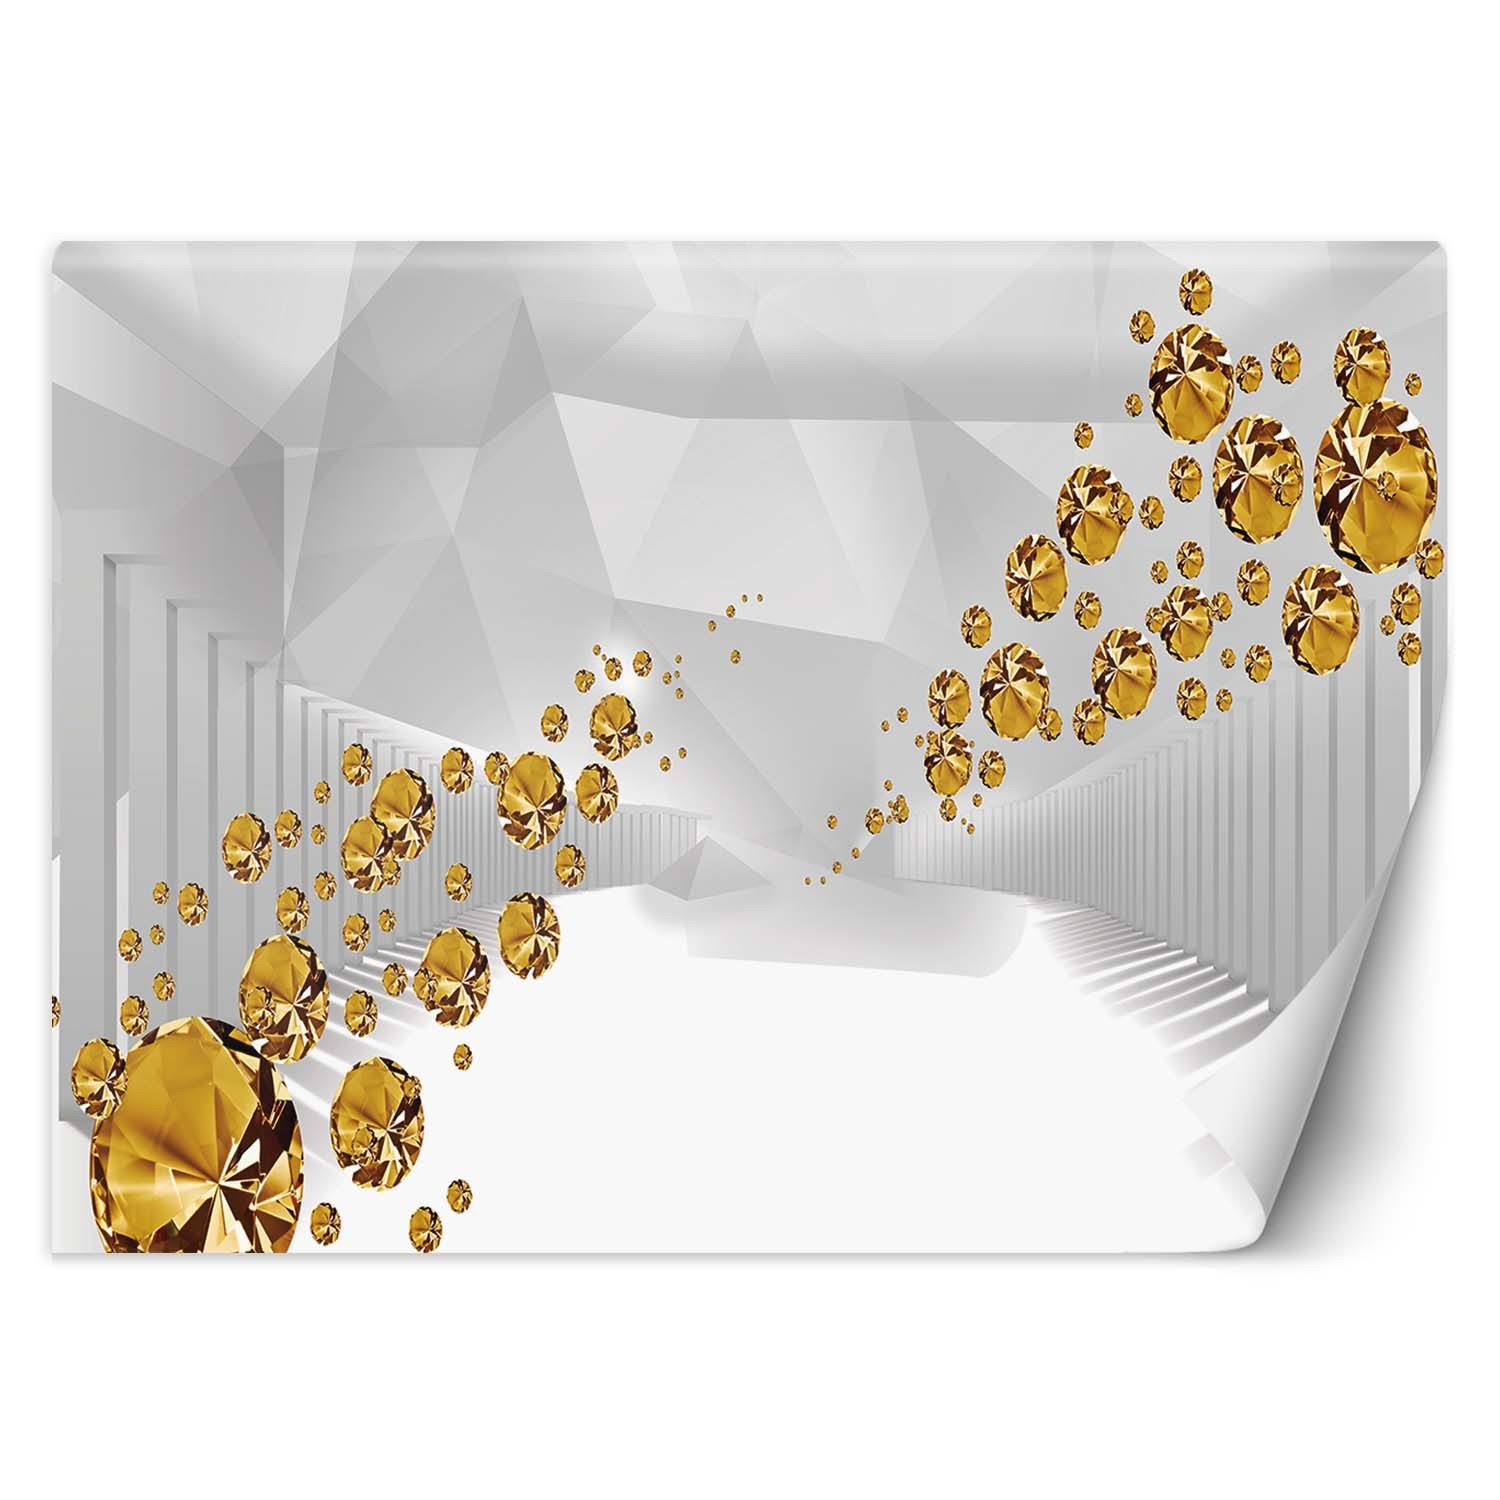 Trend24 – Behang – Gouden Stenen In Een Abstracte Tunnel – Behangpapier – Fotobehang 3D – Behang Woonkamer – 400x280x2 cm – Incl. behanglijm